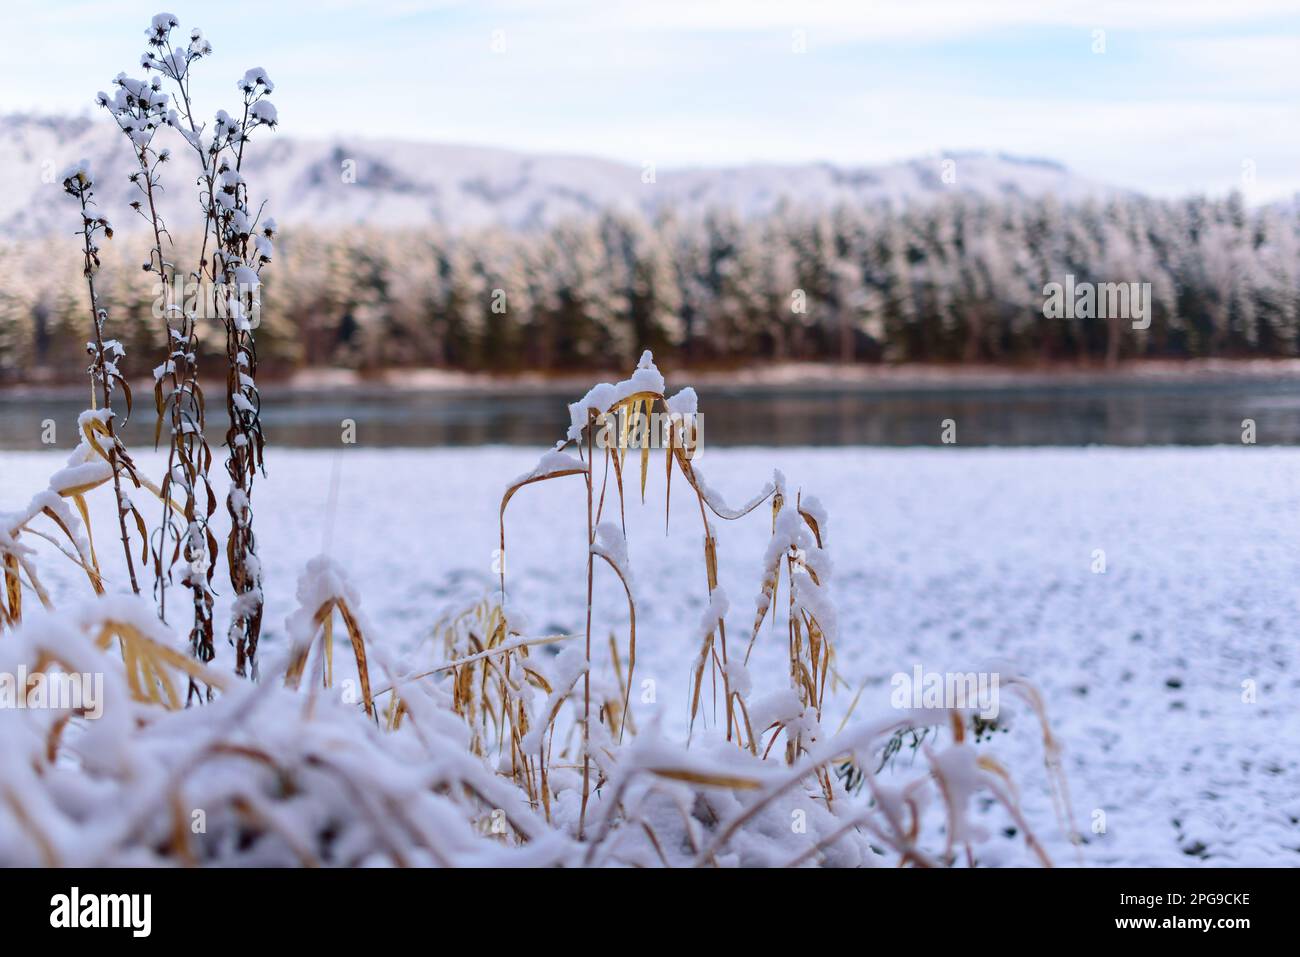 La prima neve cadde sull'erba della foresta e sulla riva in pietra vicino al fiume Katun, sulle montagne Altai in Siberia, al mattino. Foto Stock